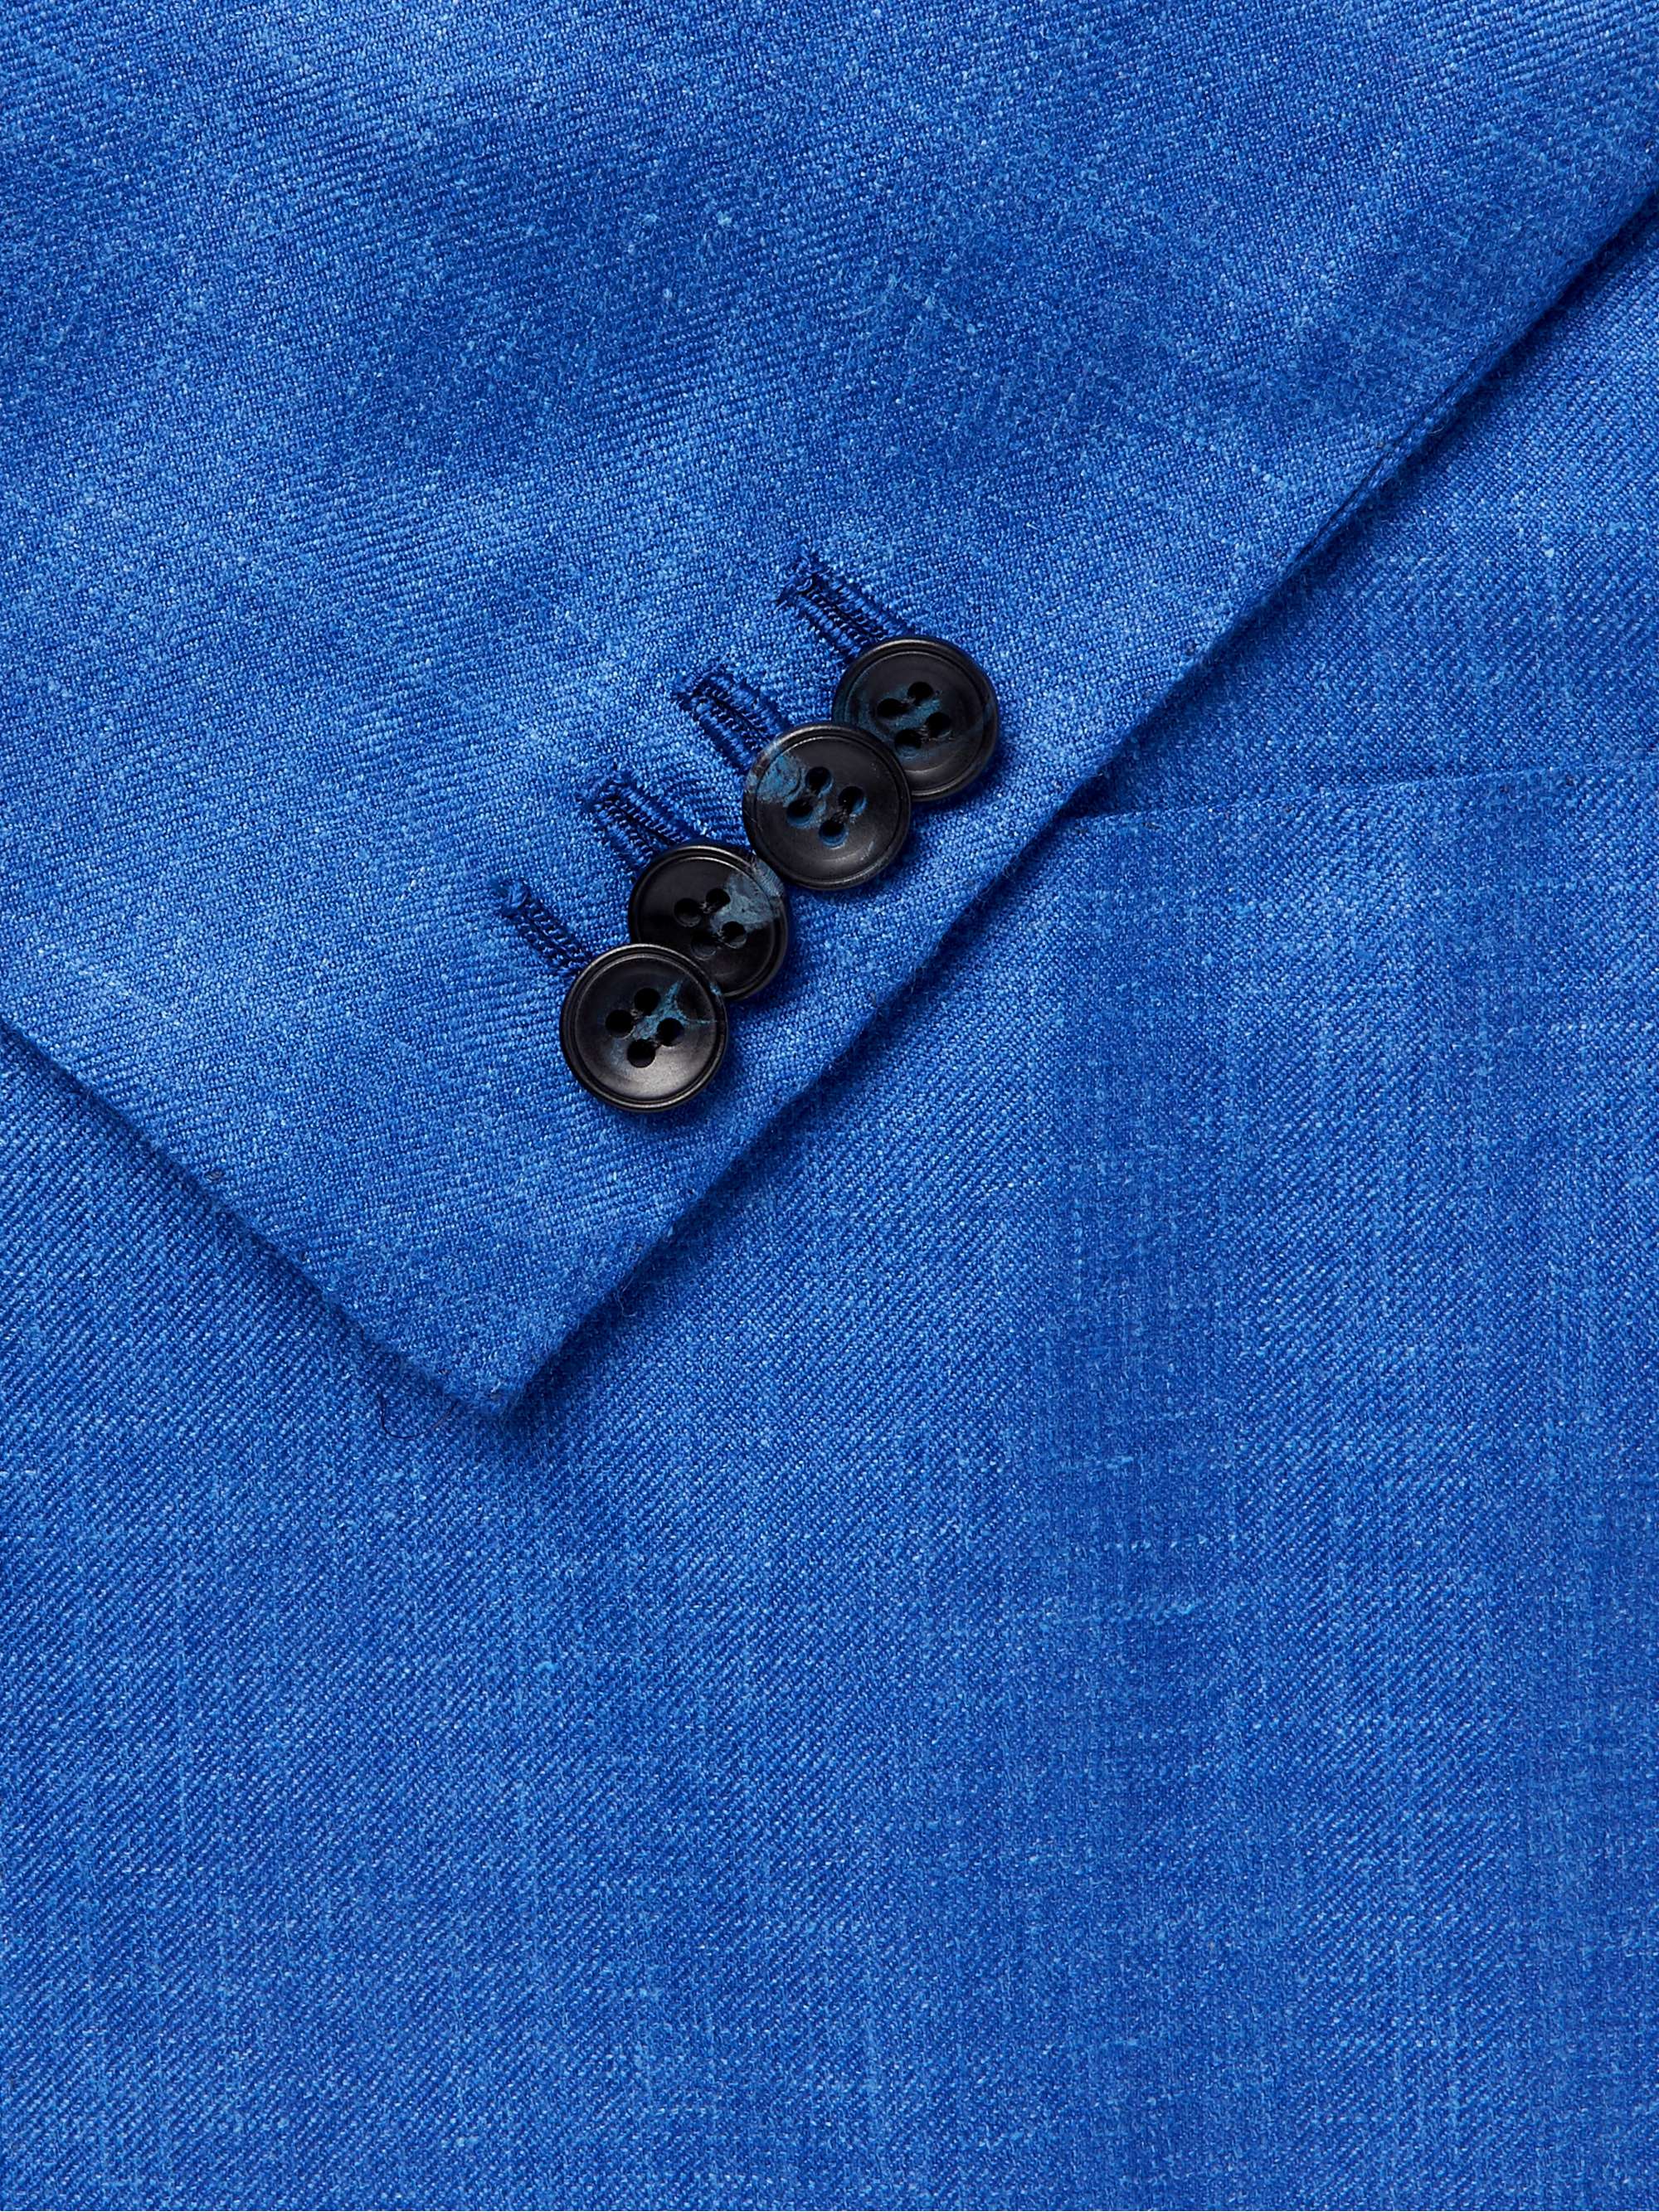 KITON Azure Slim-Fit Unstructured Cashmere, Linen and Silk-Blend Blazer